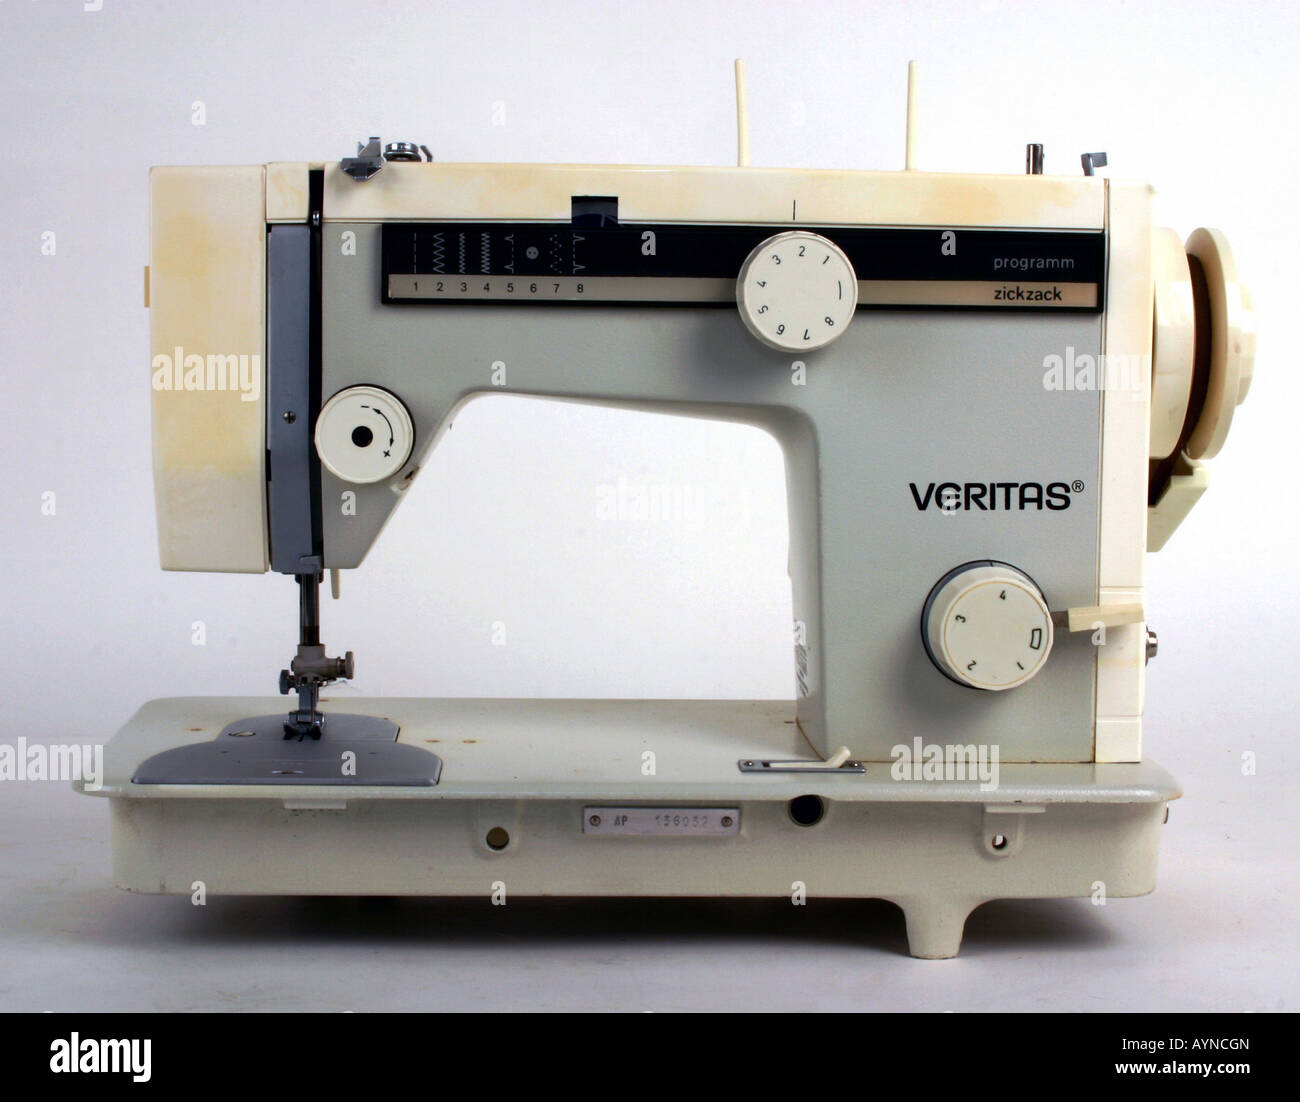 Electrical sewing machine veritas 8014 29 Banque de photographies et  d'images à haute résolution - Alamy